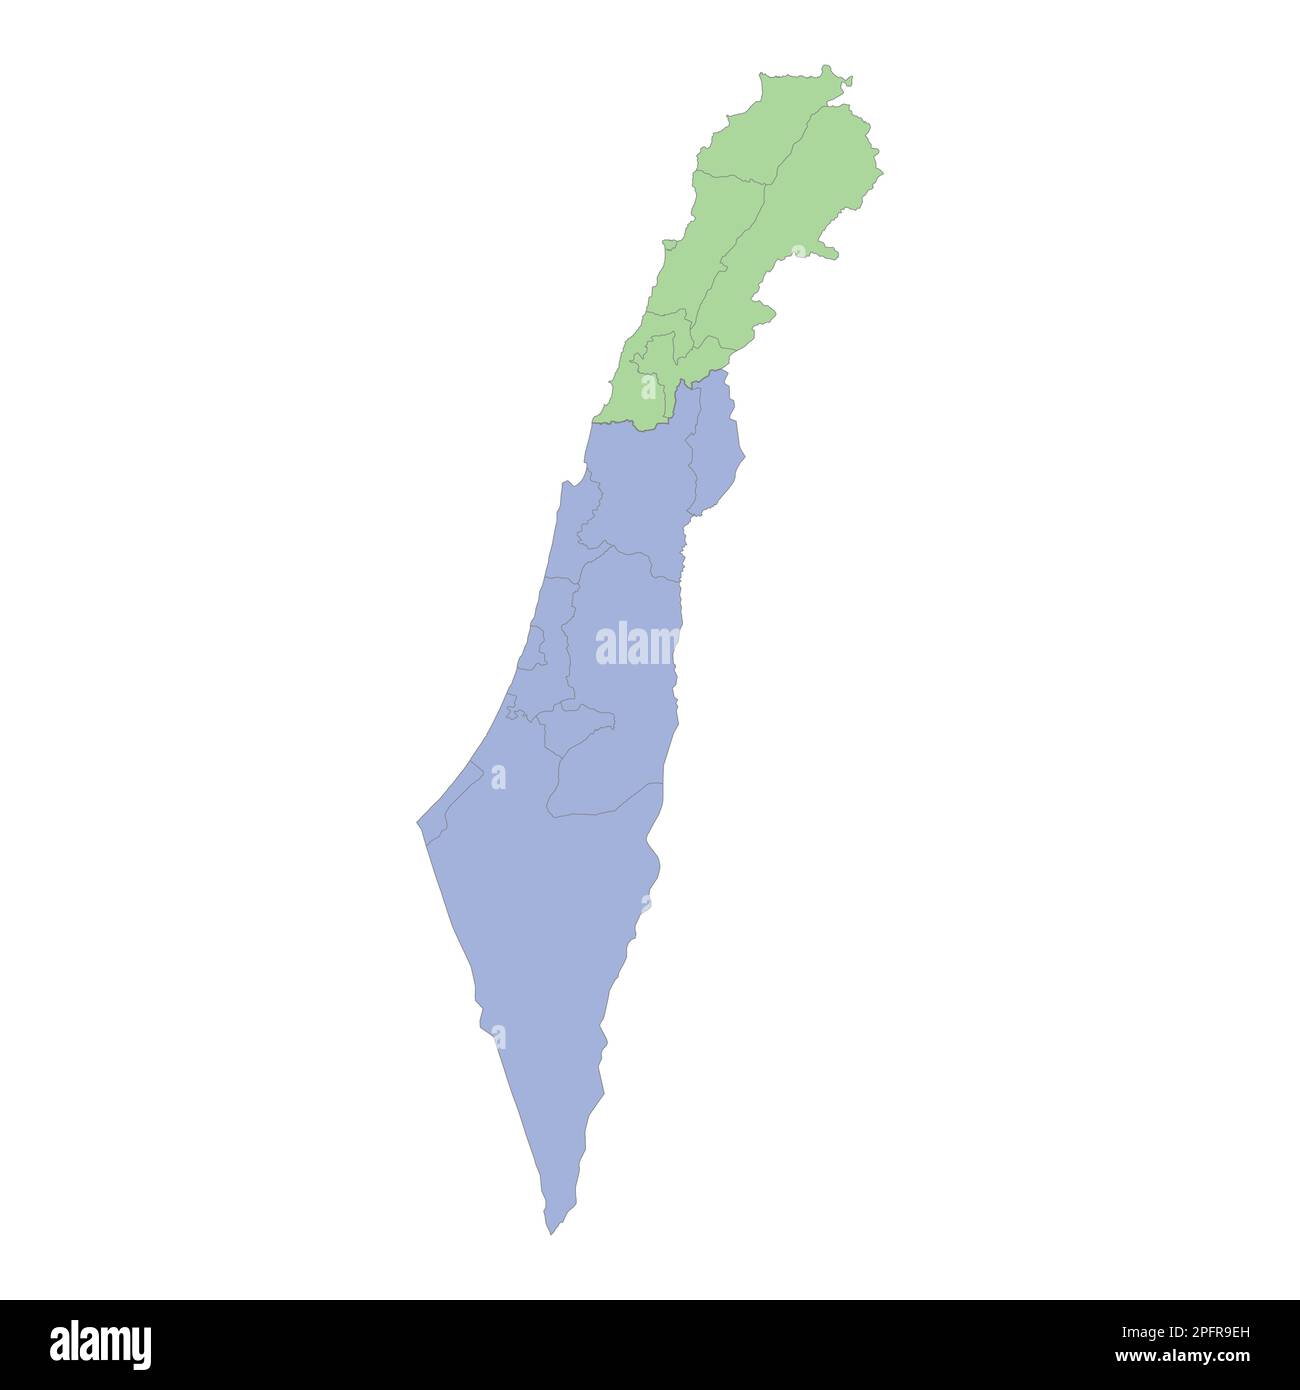 Mappa politica di alta qualità di Israele e Libano con i confini delle regioni o province. Illustrazione vettoriale Illustrazione Vettoriale